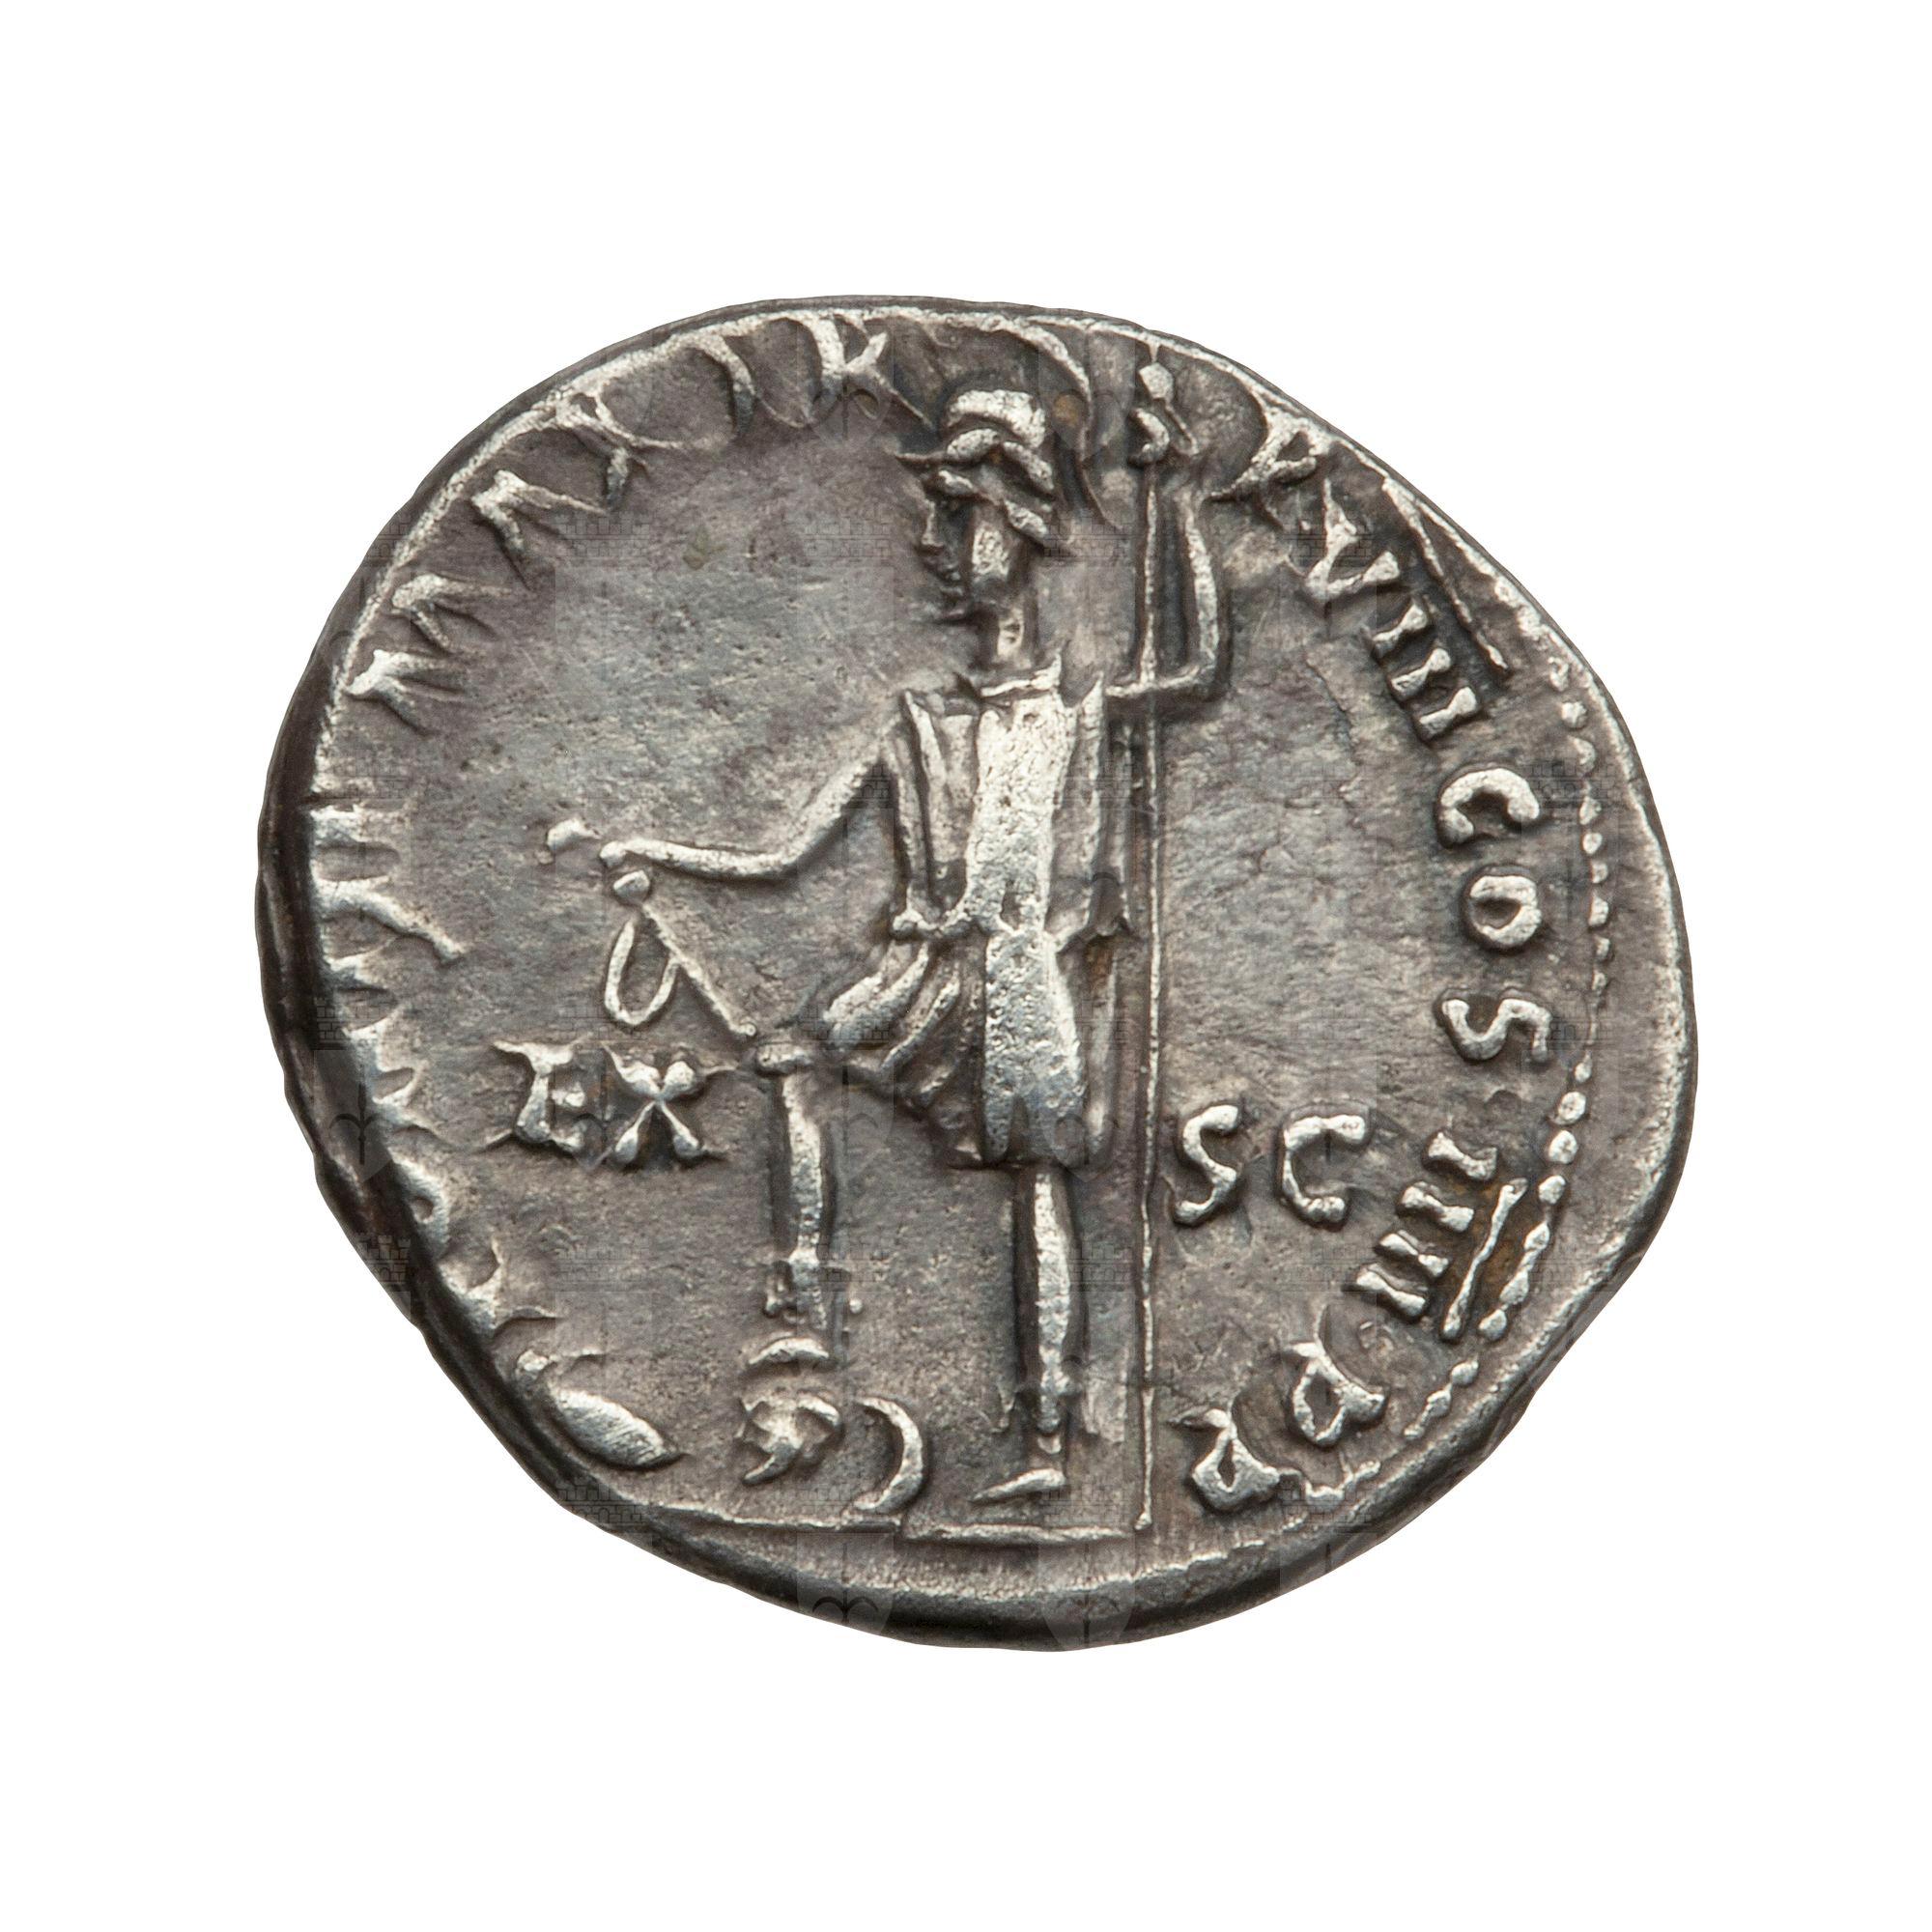 https://catalogomusei.comune.trieste.it/samira/resource/image/reperti-archeologici/Roma 127 R Nerone.jpg?token=65e6ca802f47f